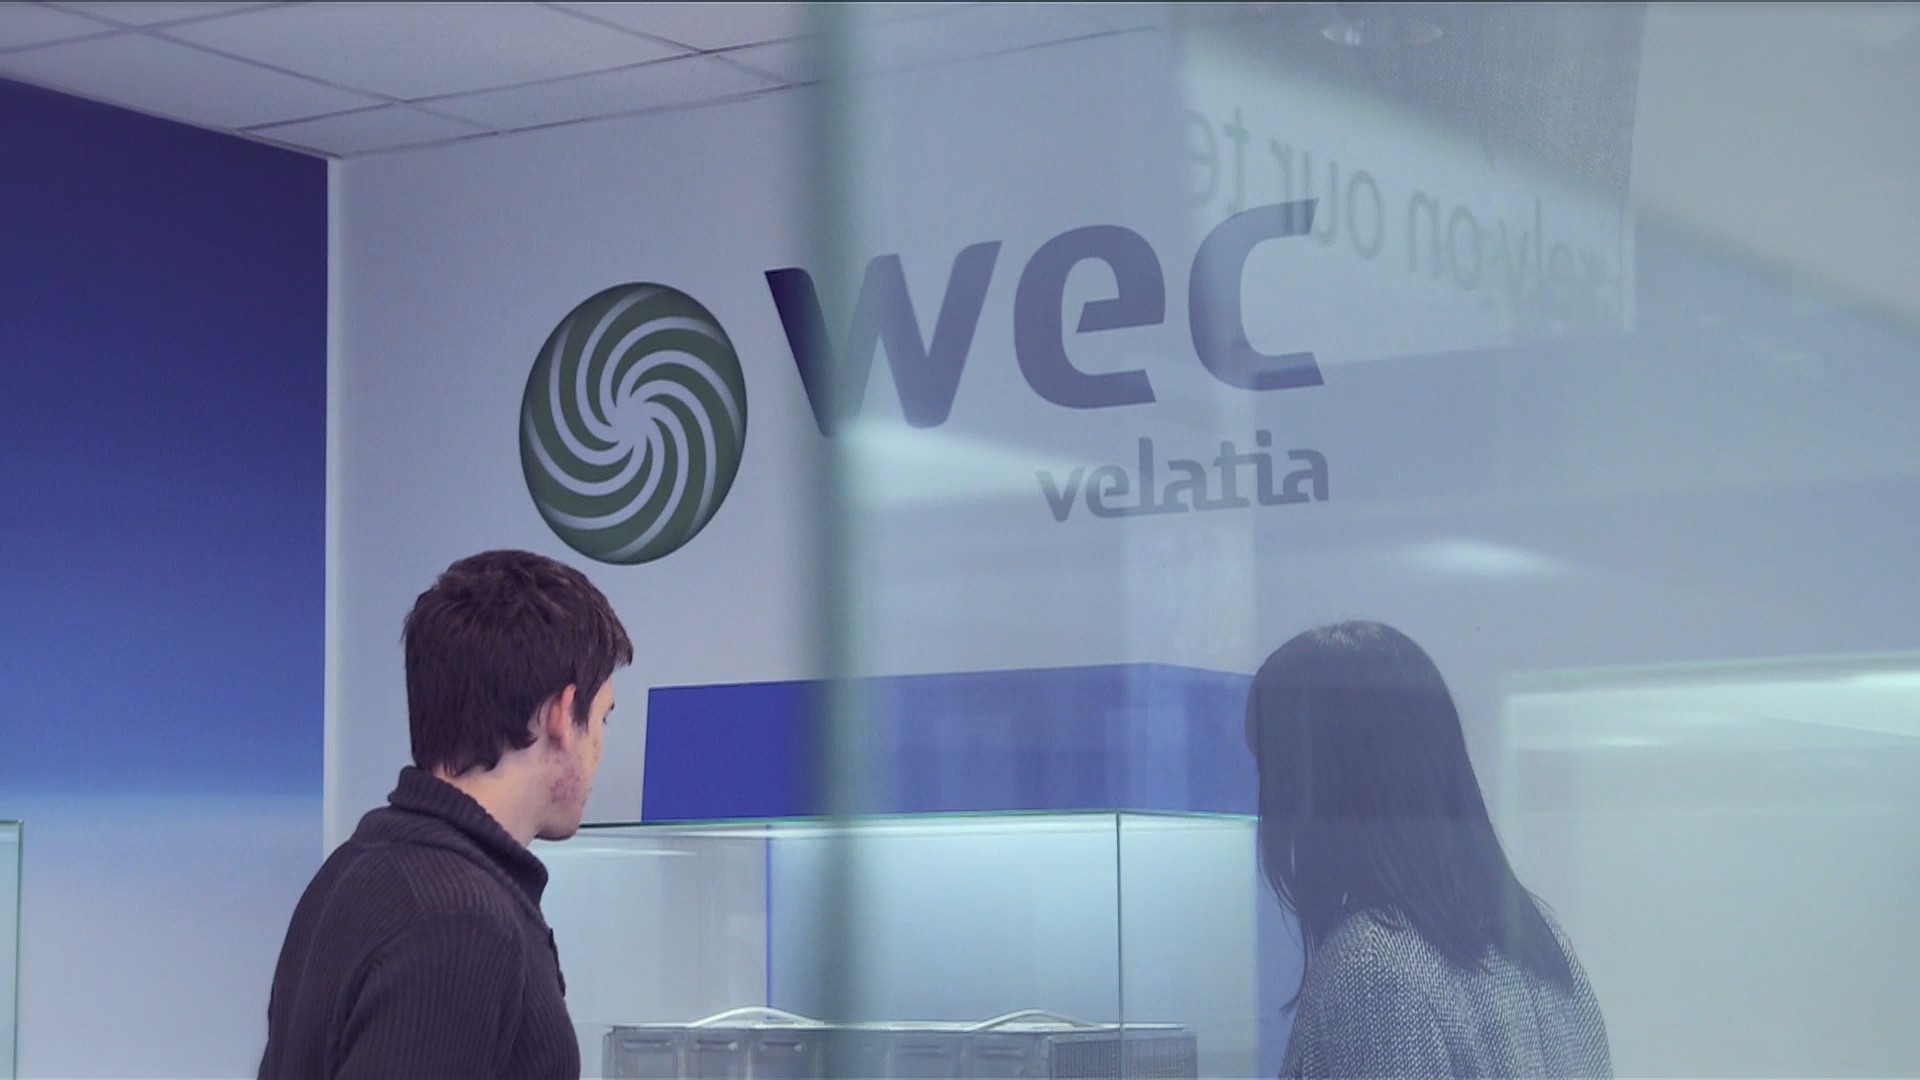 Becas Prácticas profesionales remuneradas en WEC Velatia con Fundación Novia Salcedo